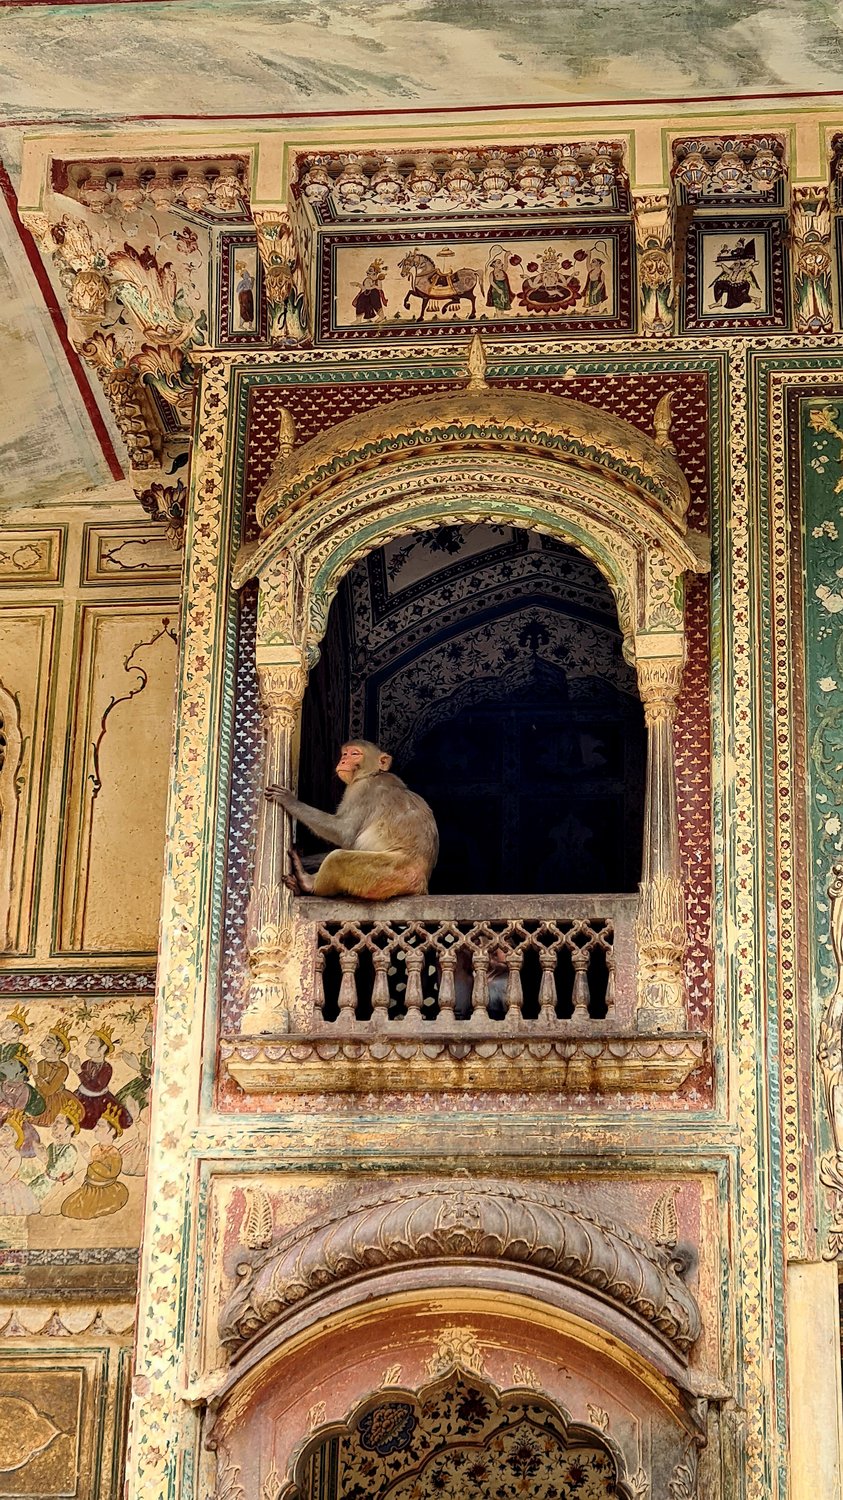 Храм обезьян, Индия,  Джайпур